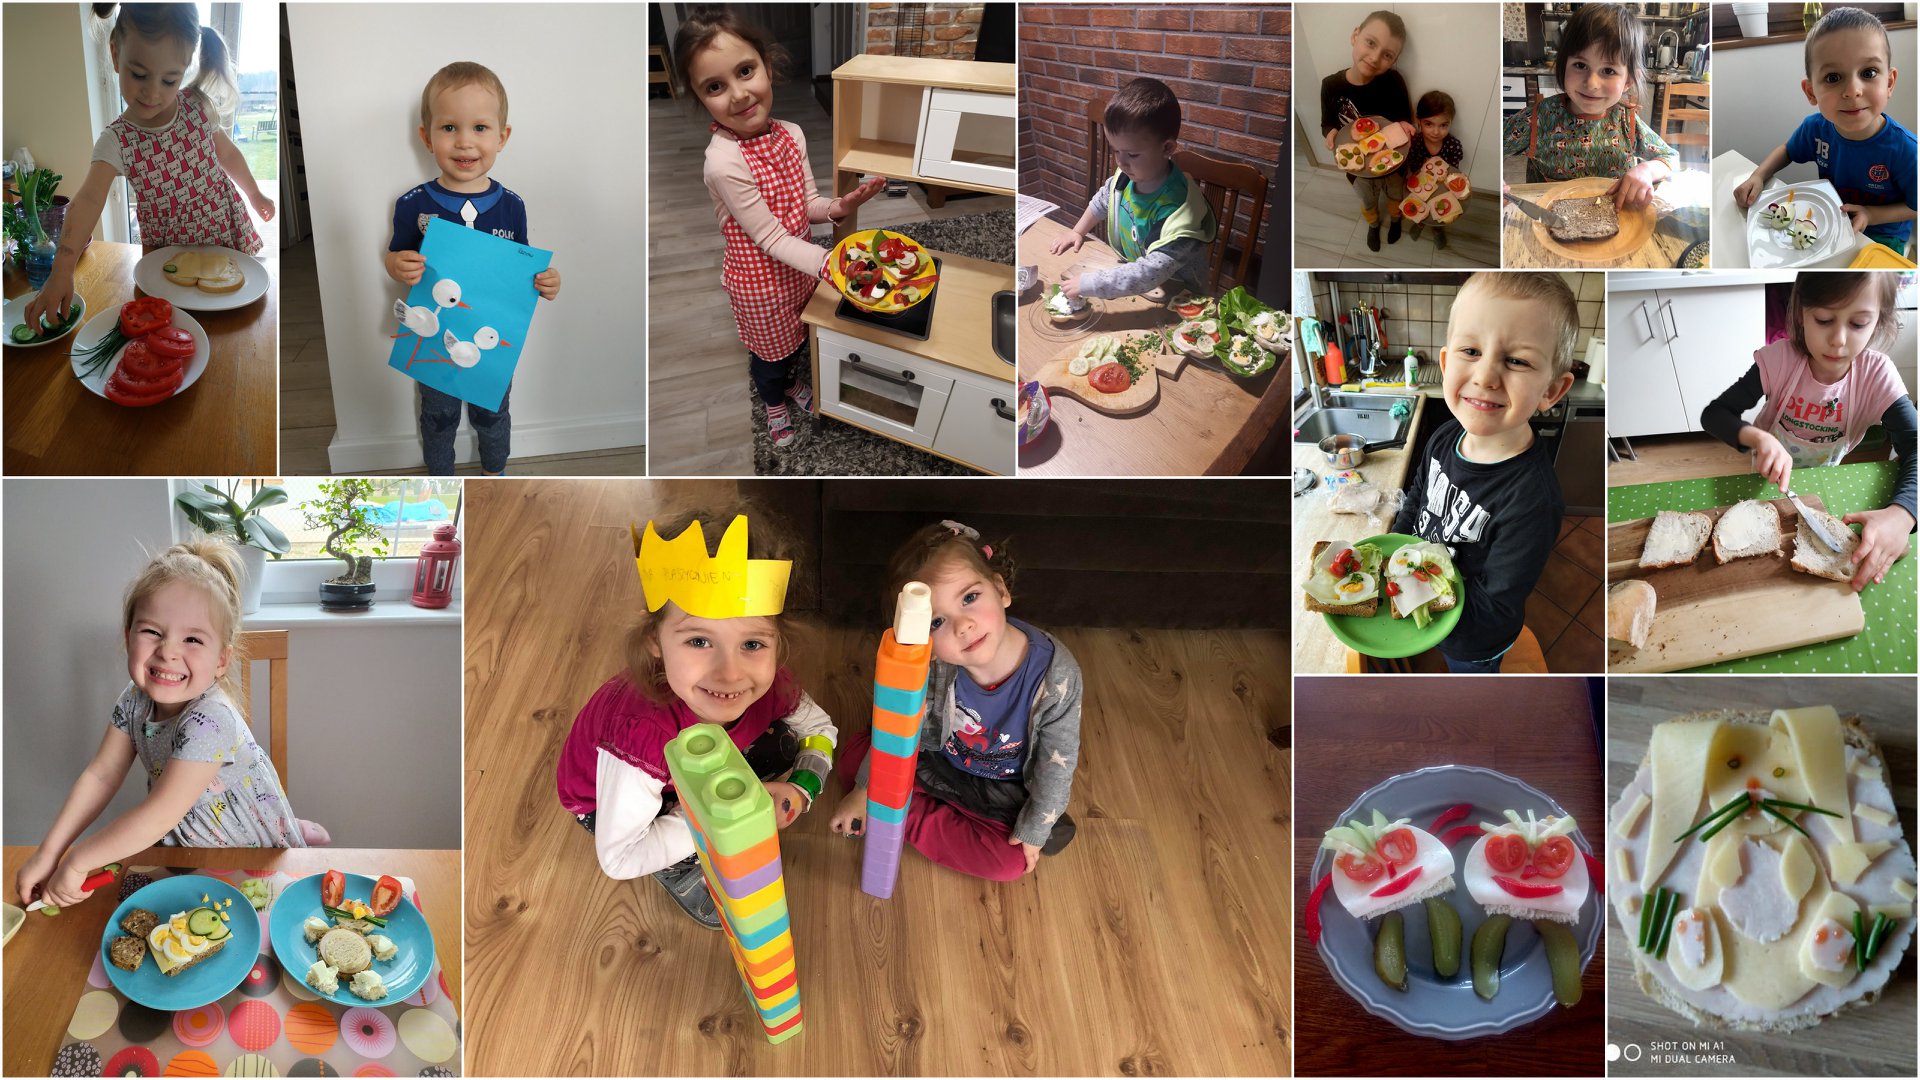 Na kolażu z 13 zdjęć znajdują się dzieci prezentujące przygotowane przez siebie kolorowe kanapki, a także prace plastyczne i budowle z klocków.